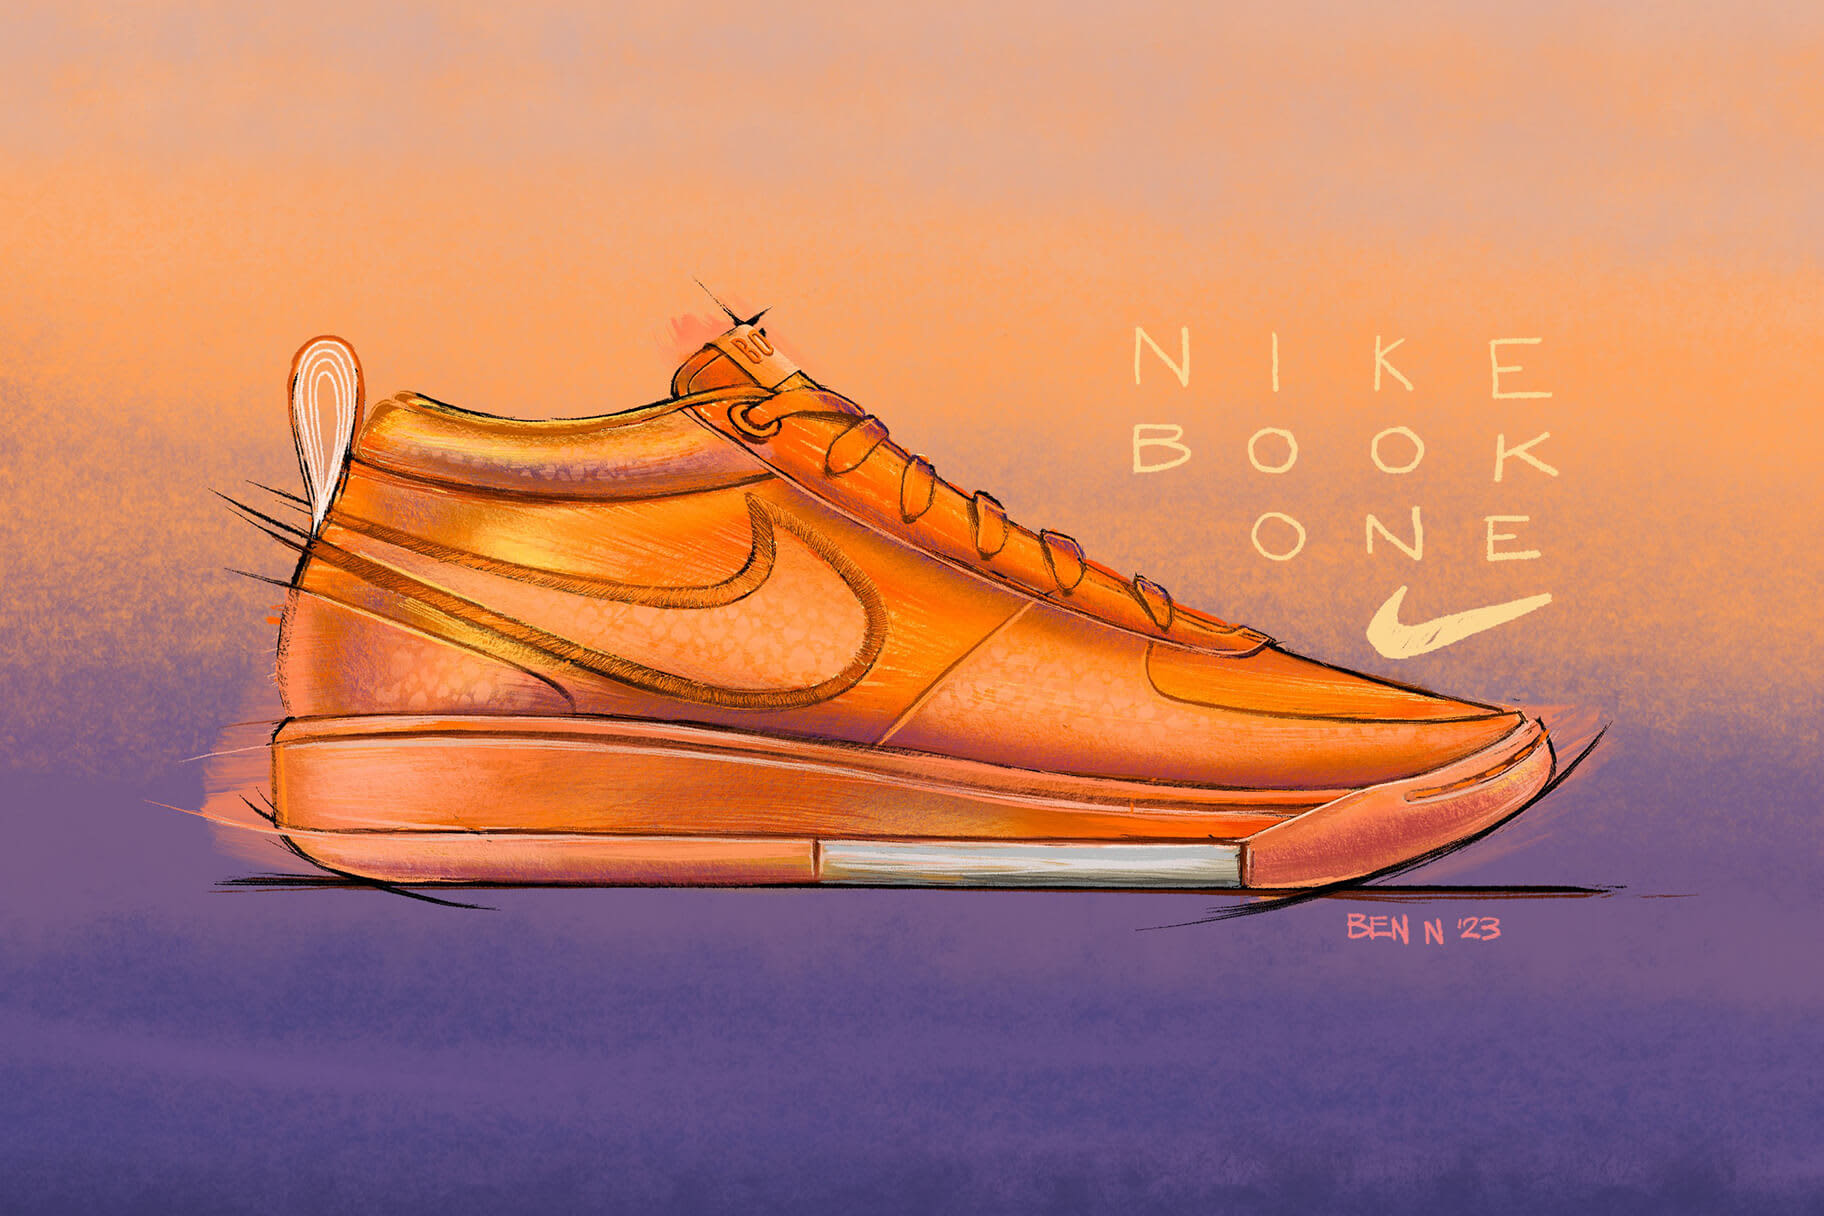 Nike presenta sus primeras zapatillas en colaboración con Devin Booker: las Nike Book 1